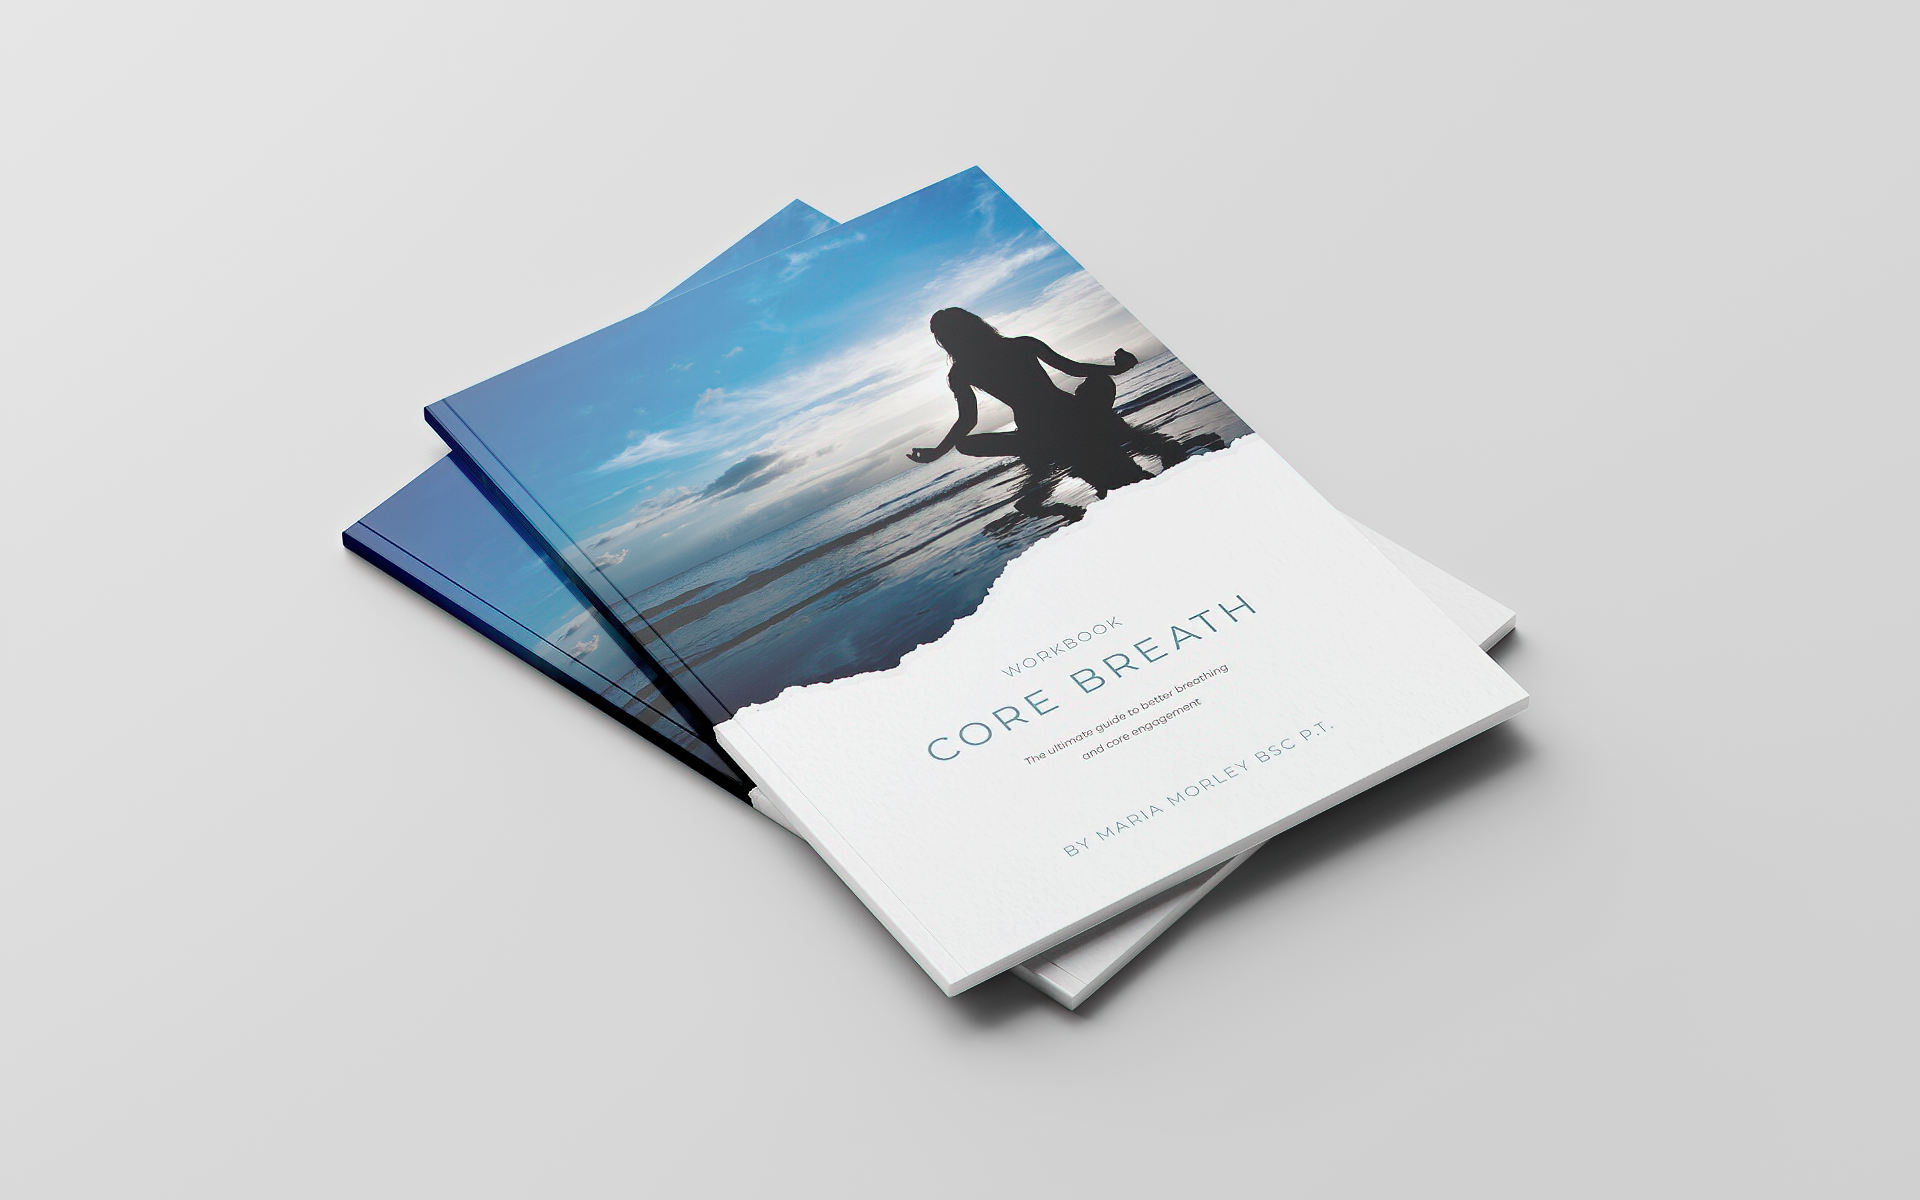 Core Breathe E-book